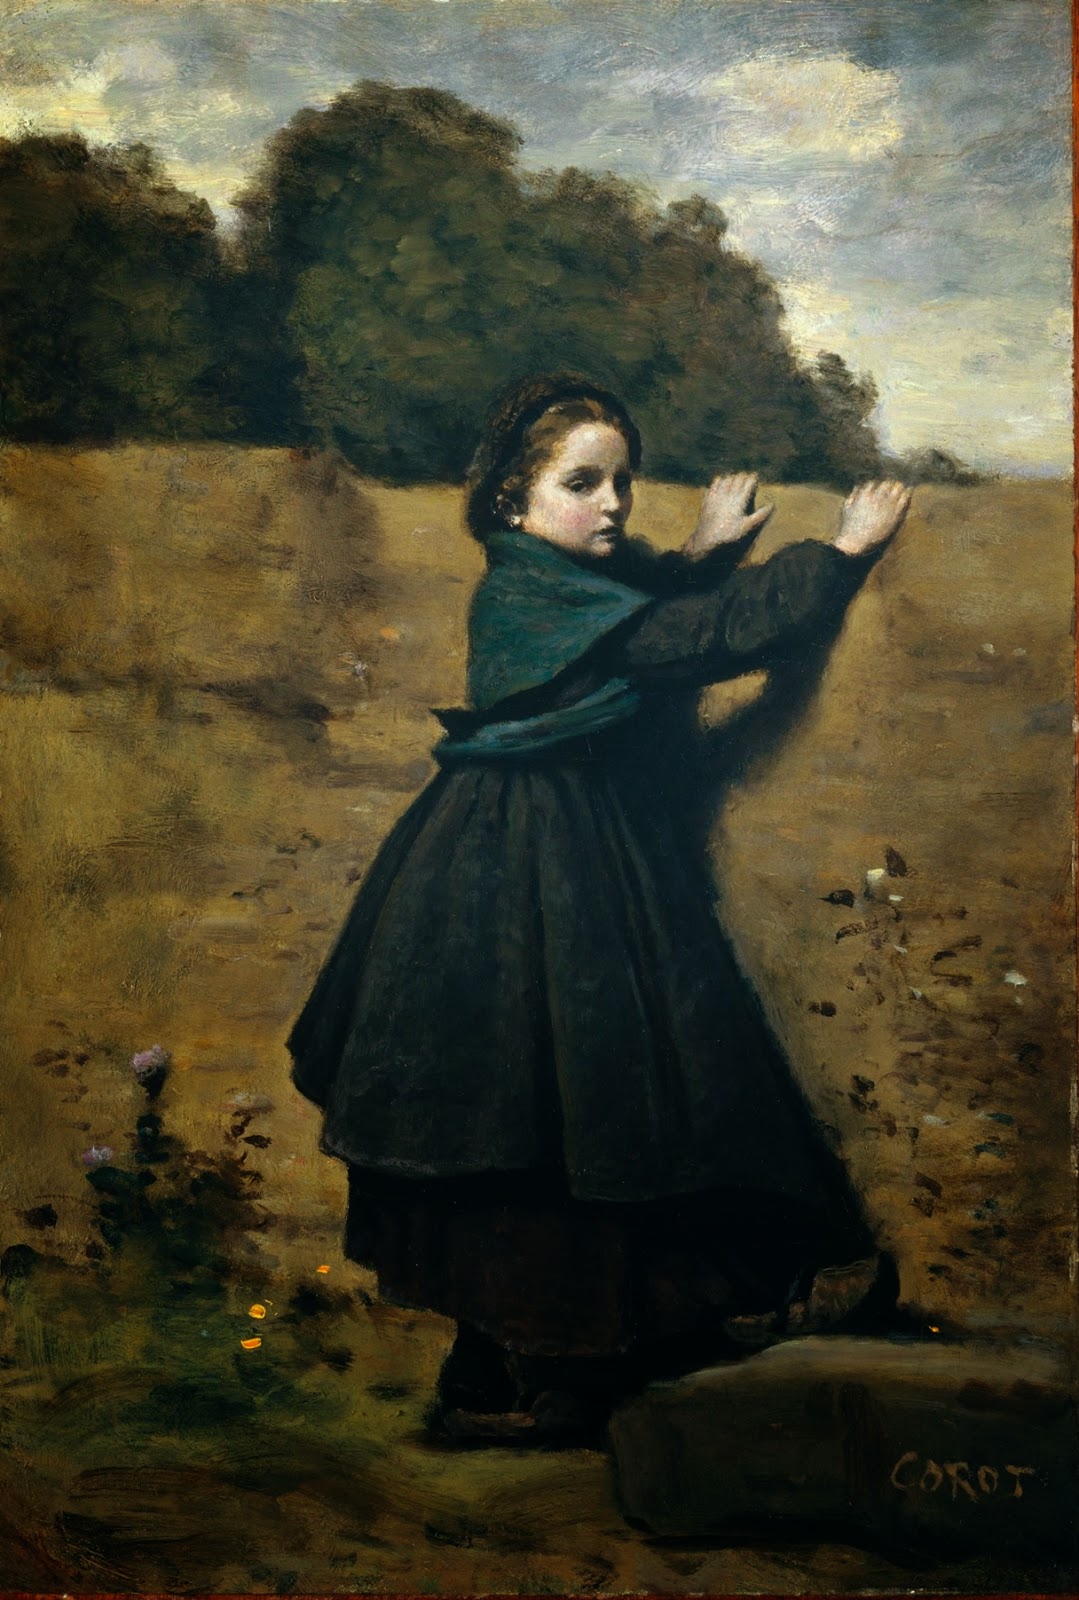 Camille+Corot (17).jpg